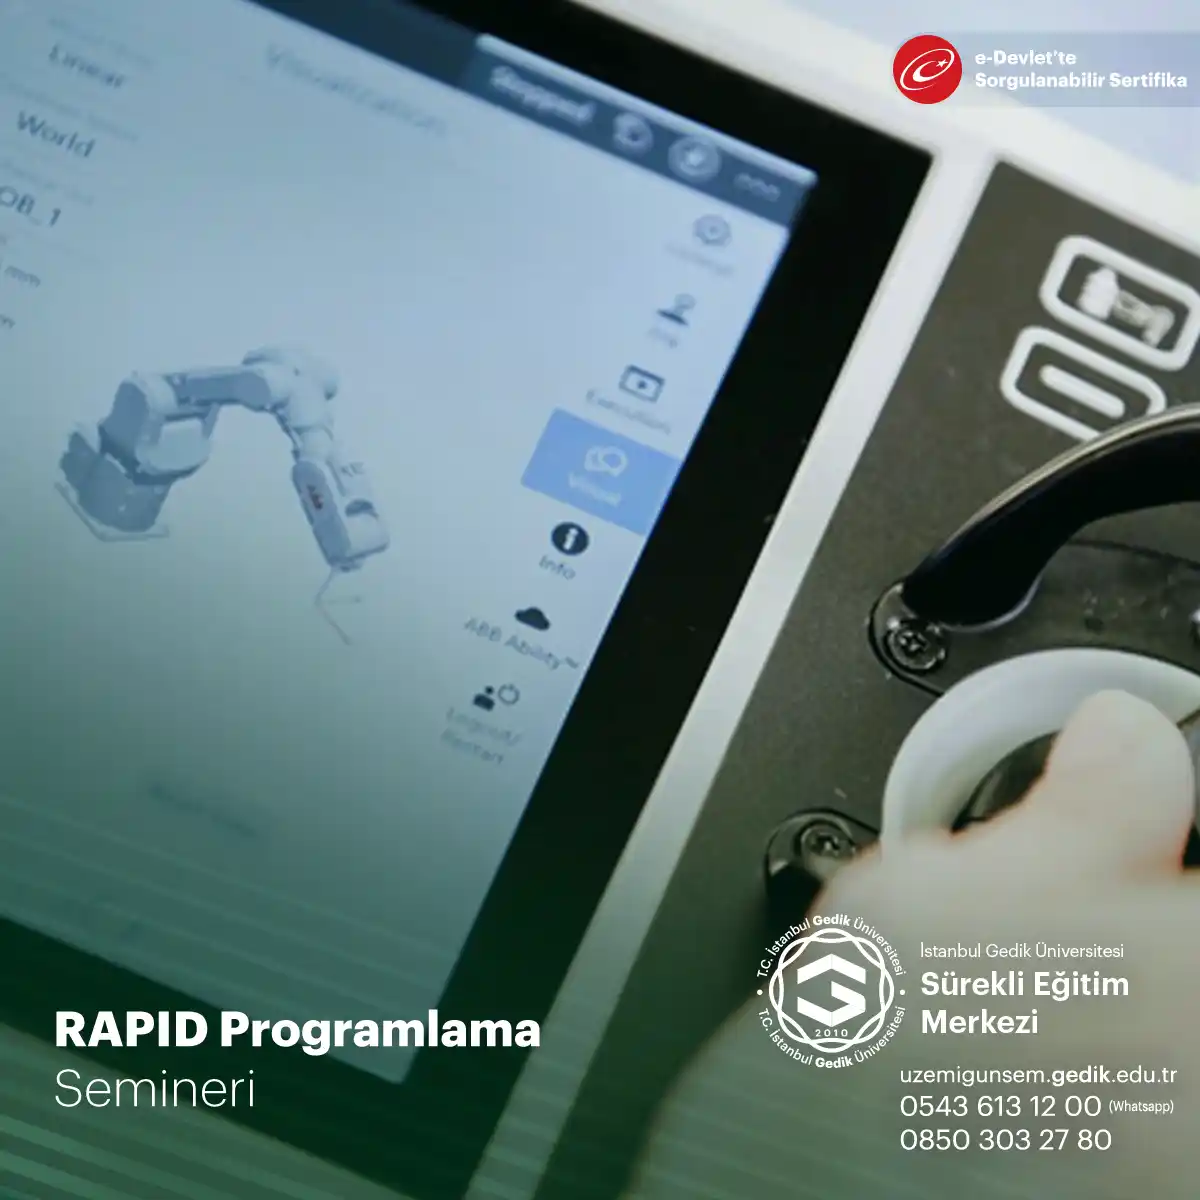 RAPID (Rapid Application Development) programlama, yazılım geliştirme sürecini hızlandıran bir yöntemdir.